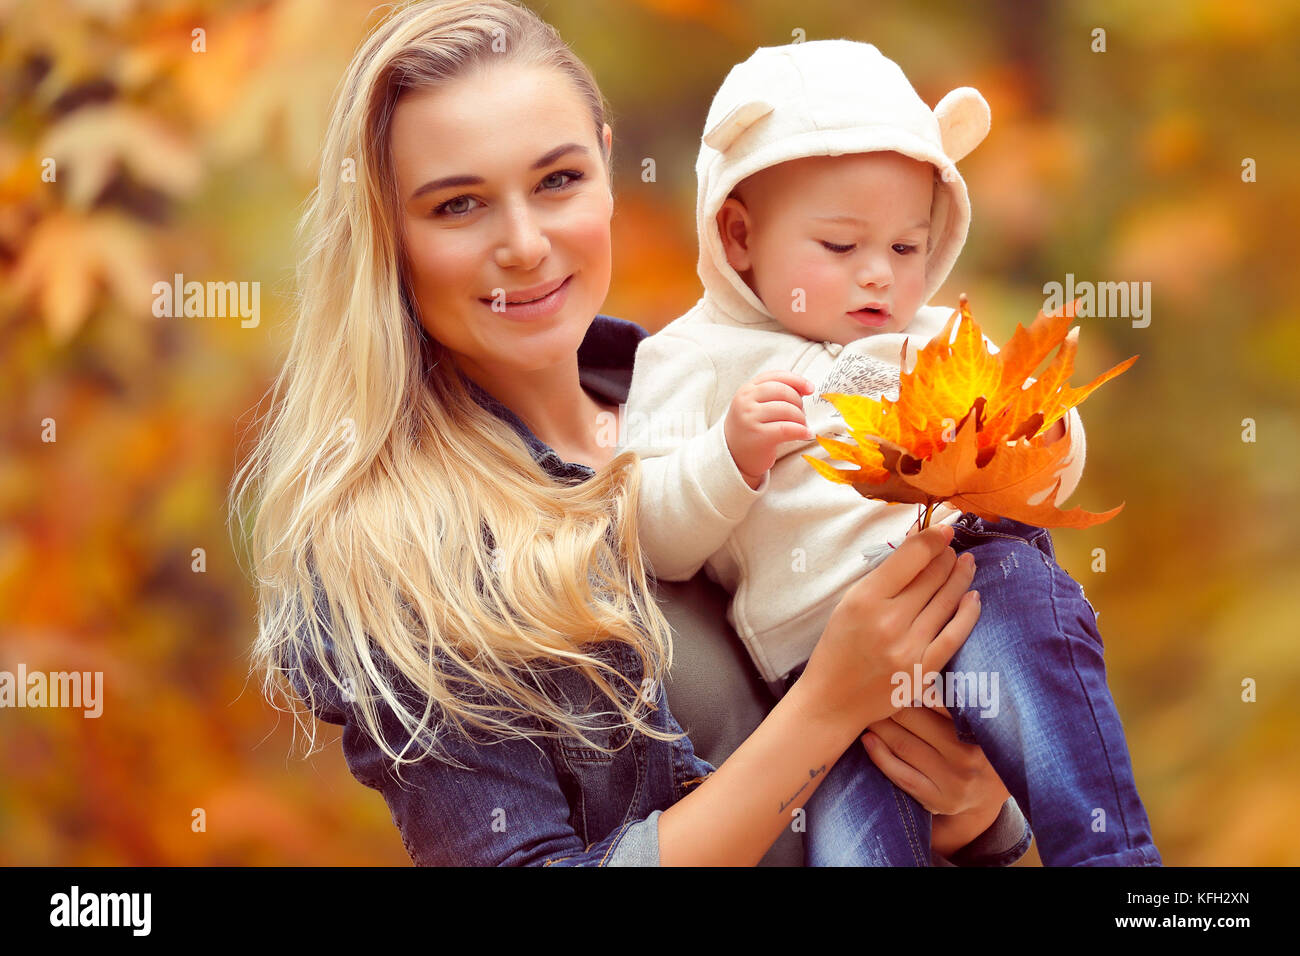 Portrait von eine nette junge Mutter mit Baby in die Hände über herbstliche trockenem Laub Hintergrund, Spaß im Herbst Park und genießen Sie die Schönheit des Herbstes Stockfoto